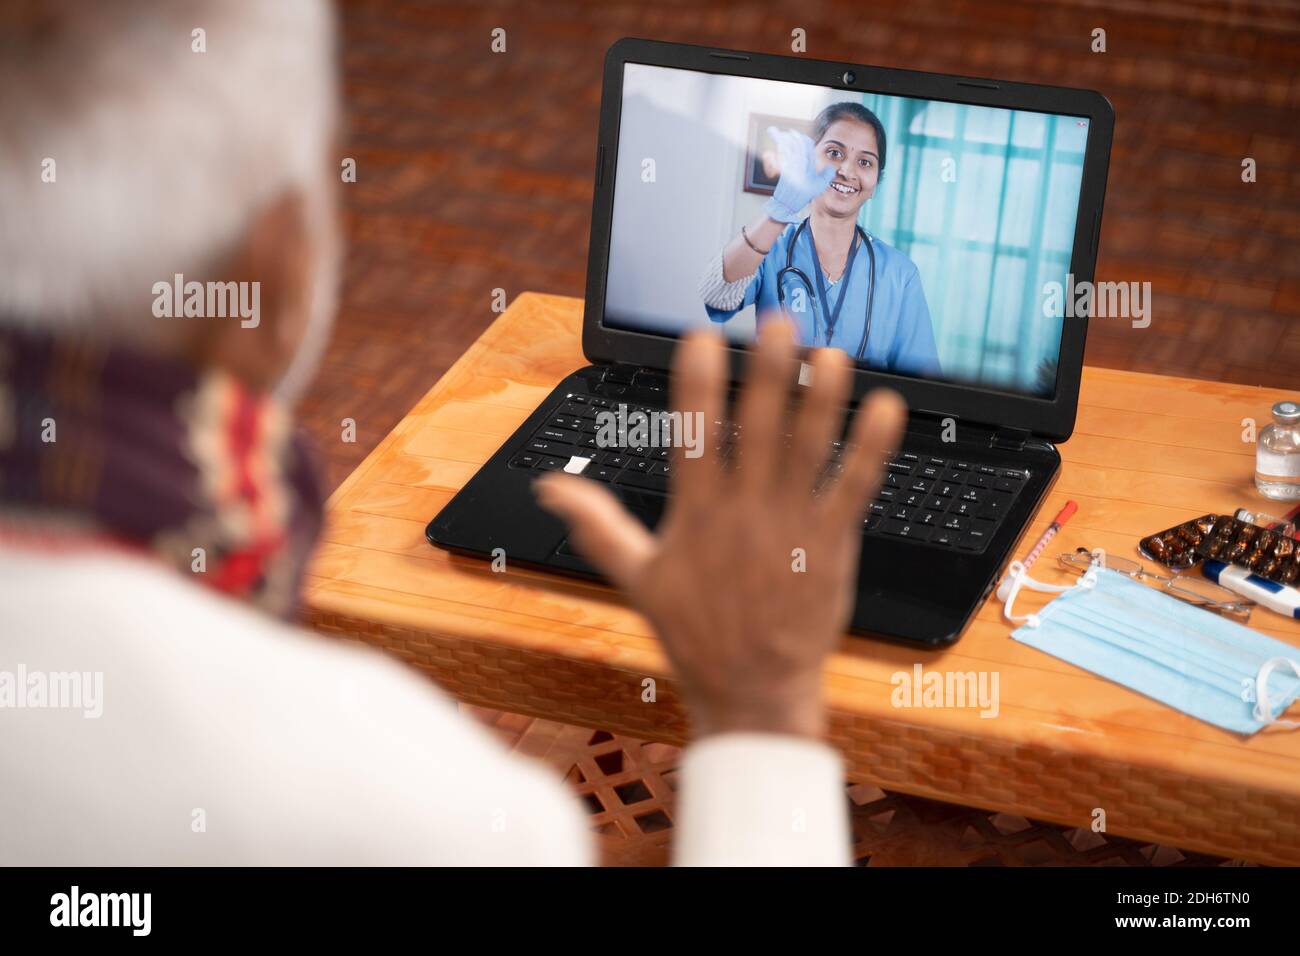 Spalla ripresa di vecchio uomo in video con il medico sullo schermo del portatile - concetto di chat online, telegHealth, o consulenza telefonica con infermiere o medico durante Foto Stock